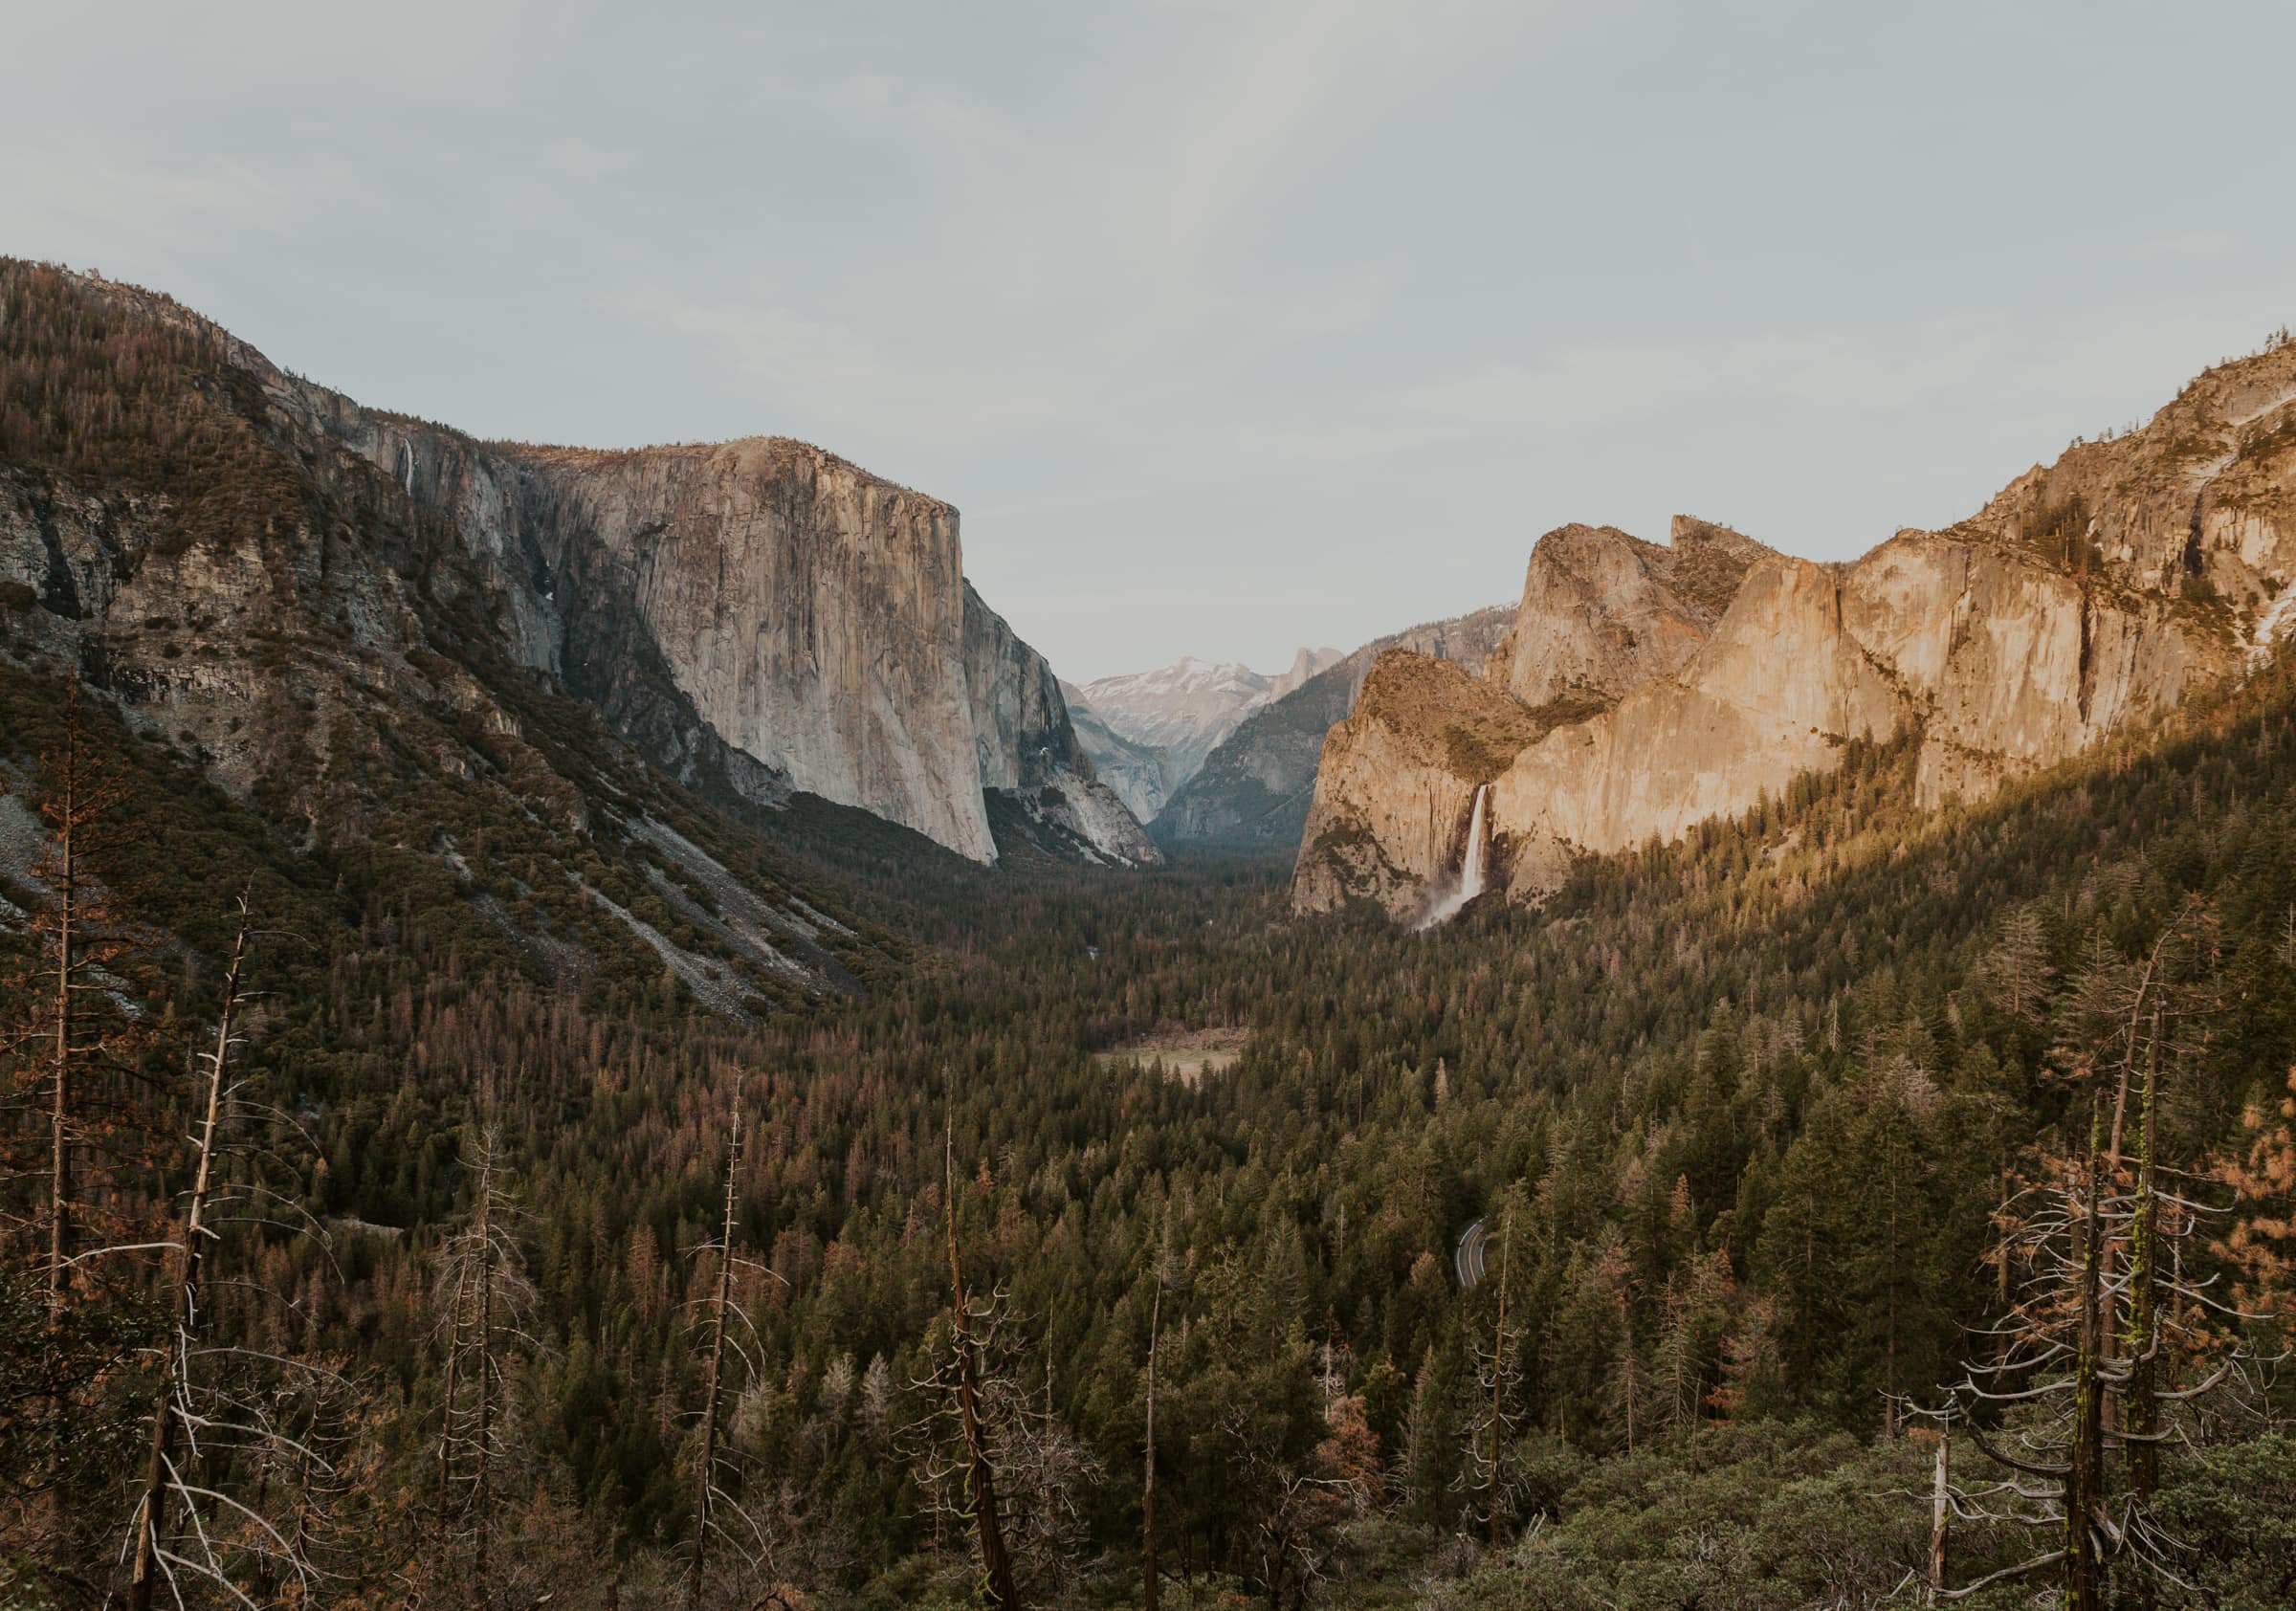 Yosemite National Park in California.